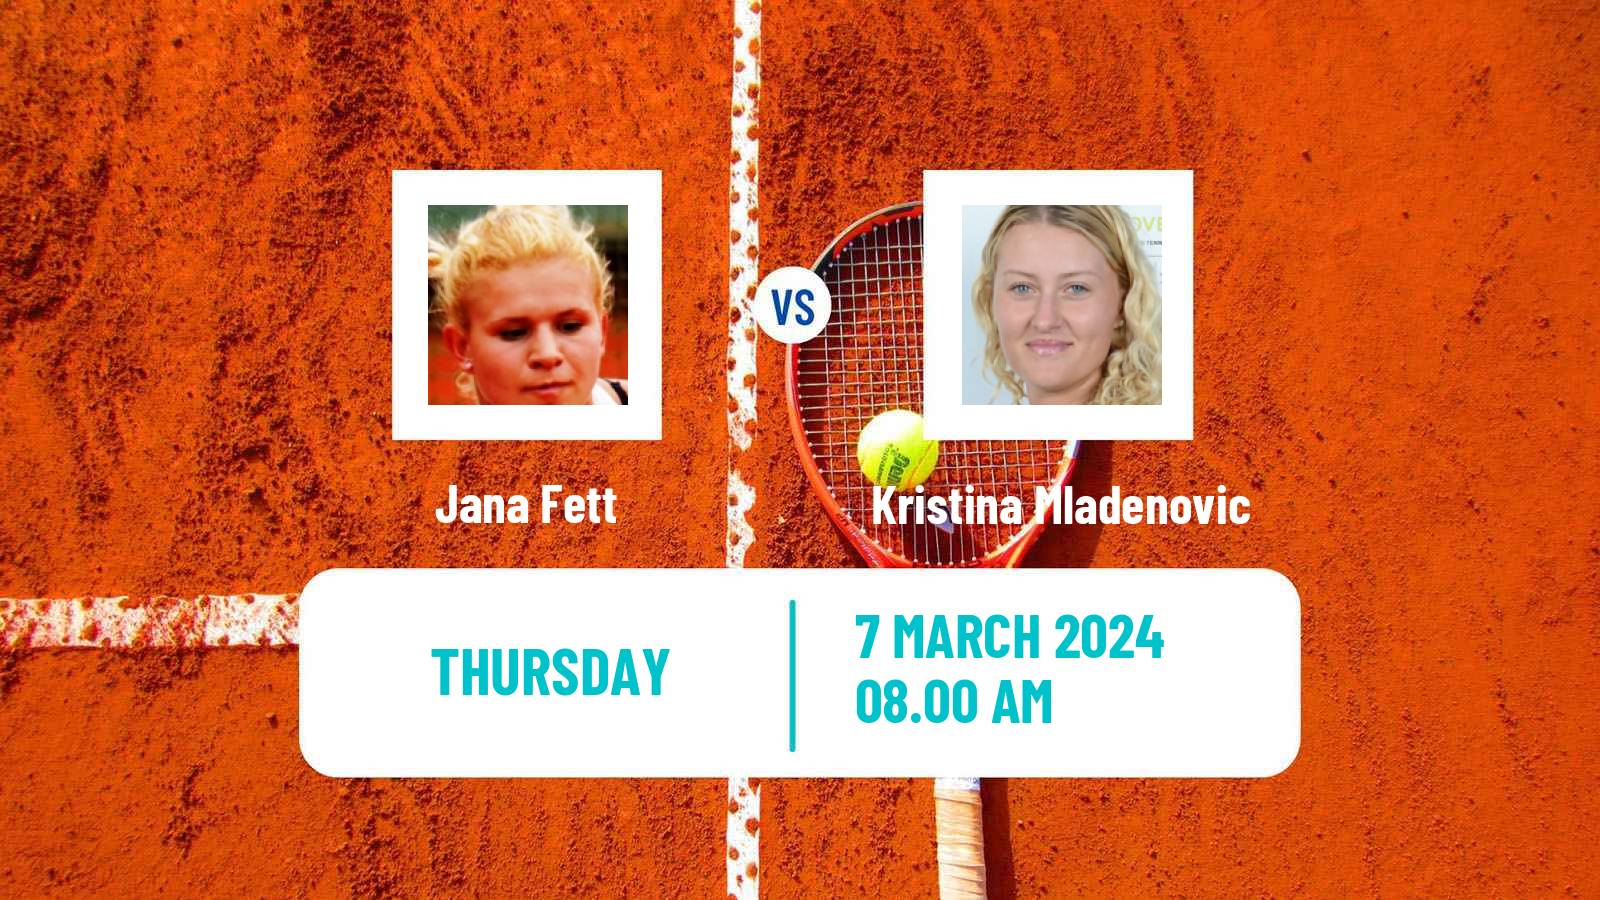 Tennis ITF W75 Trnava Women Jana Fett - Kristina Mladenovic